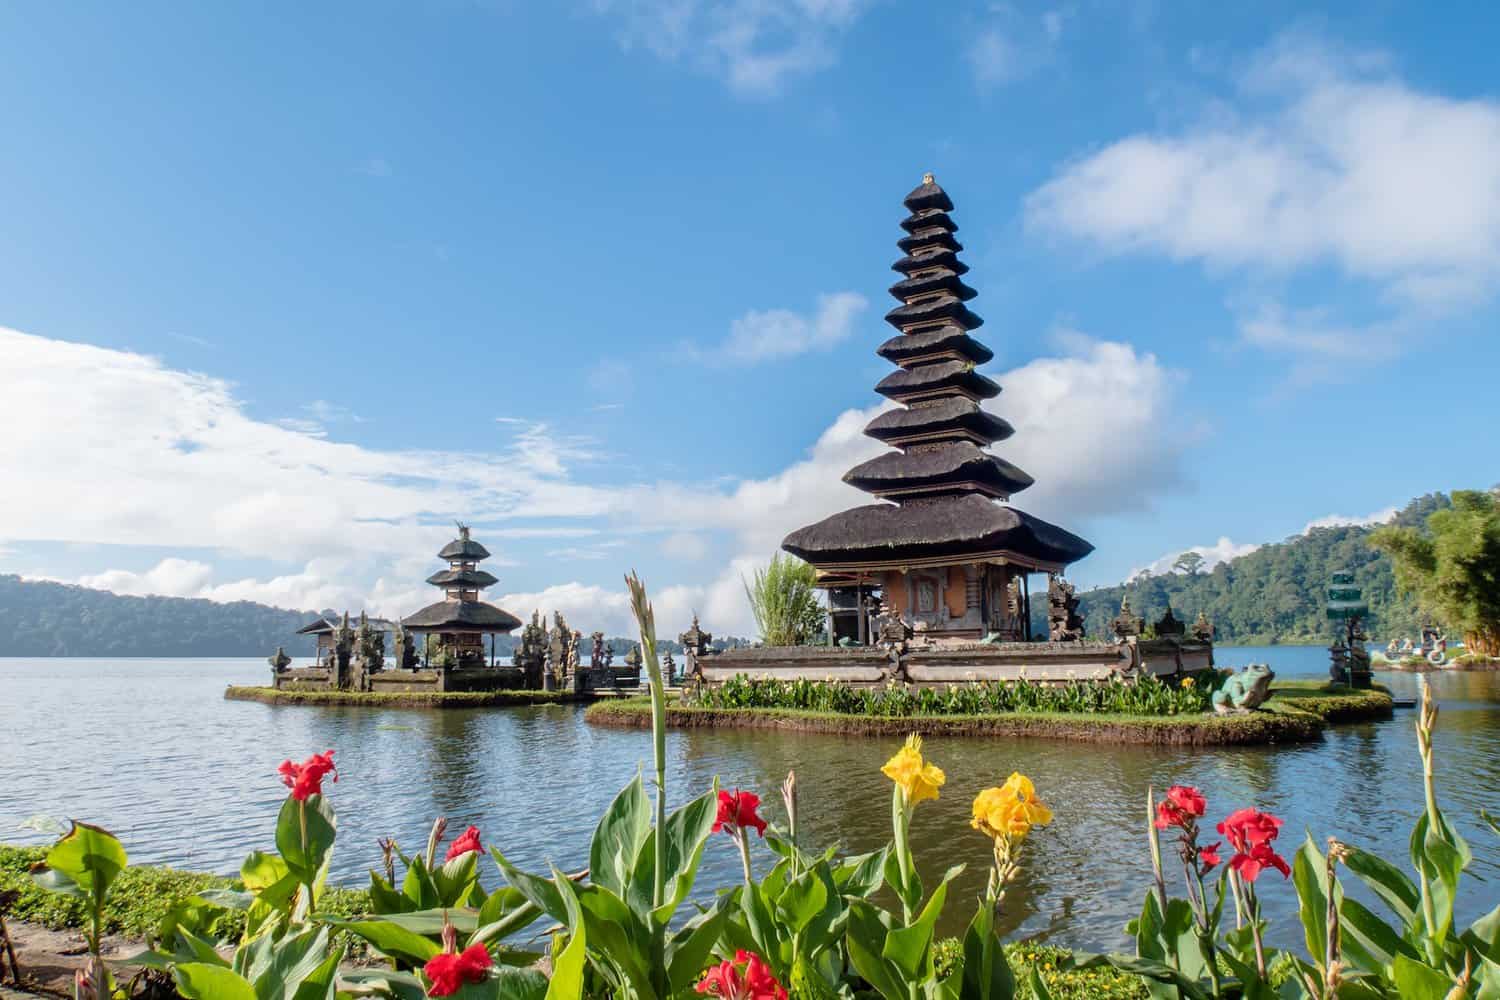 Pura Ulun Danu Bratan, Indonesia Bali temle on the lake with pyramid structure